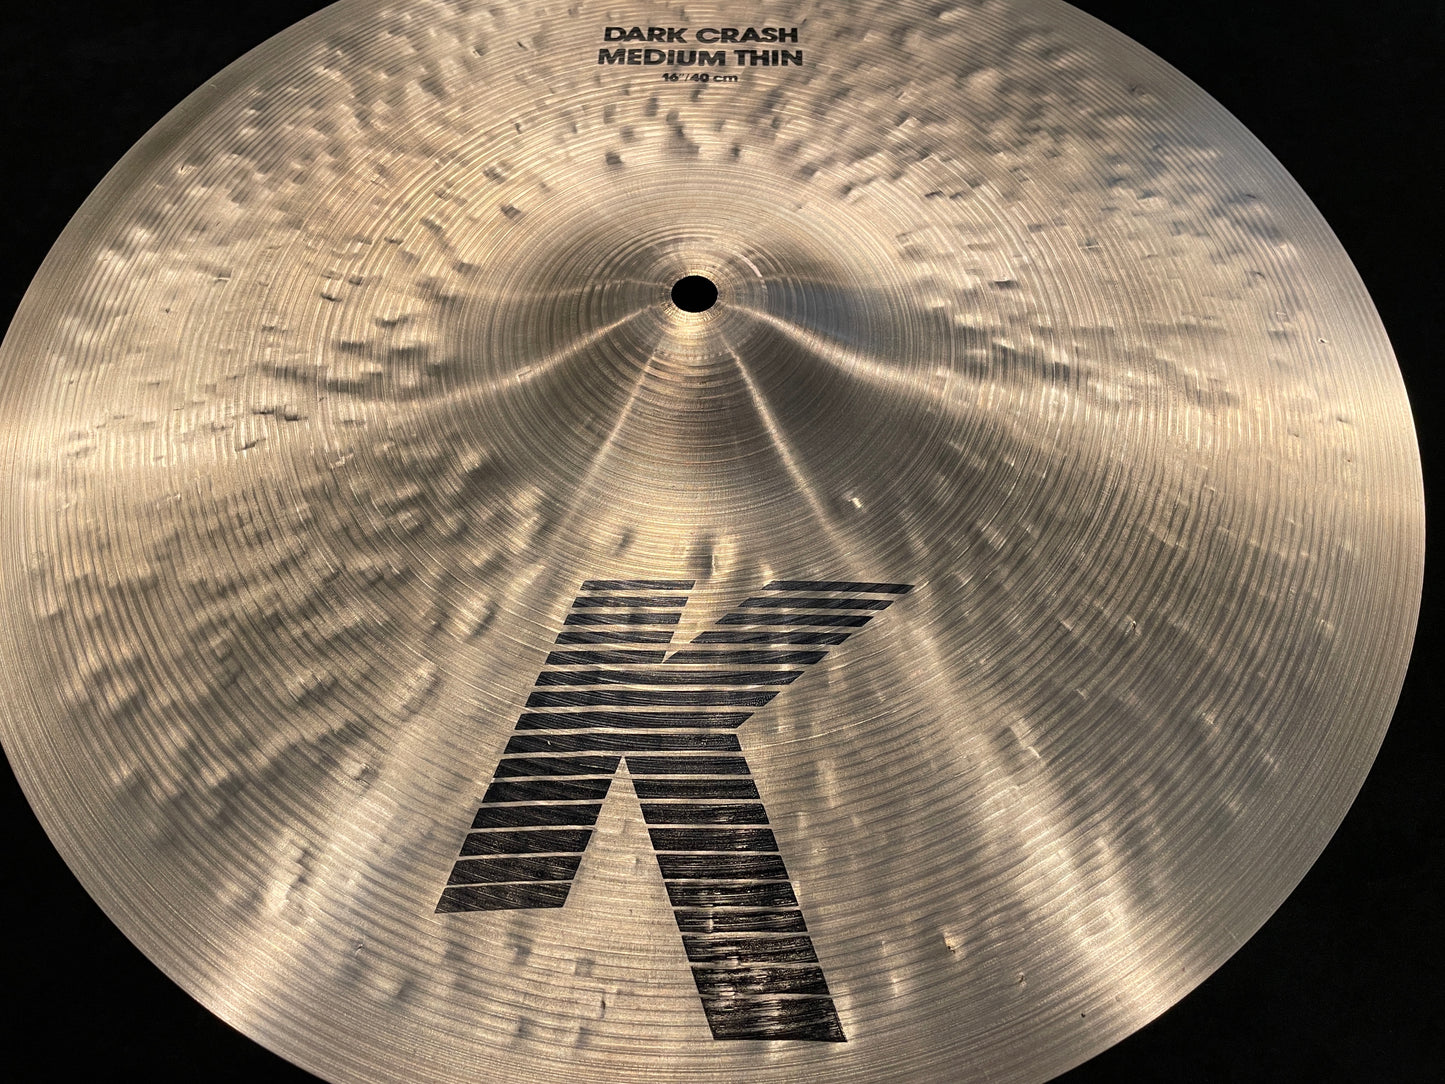 16" Zildjian K Dark Crash Medium Thin Cymbal 1176g